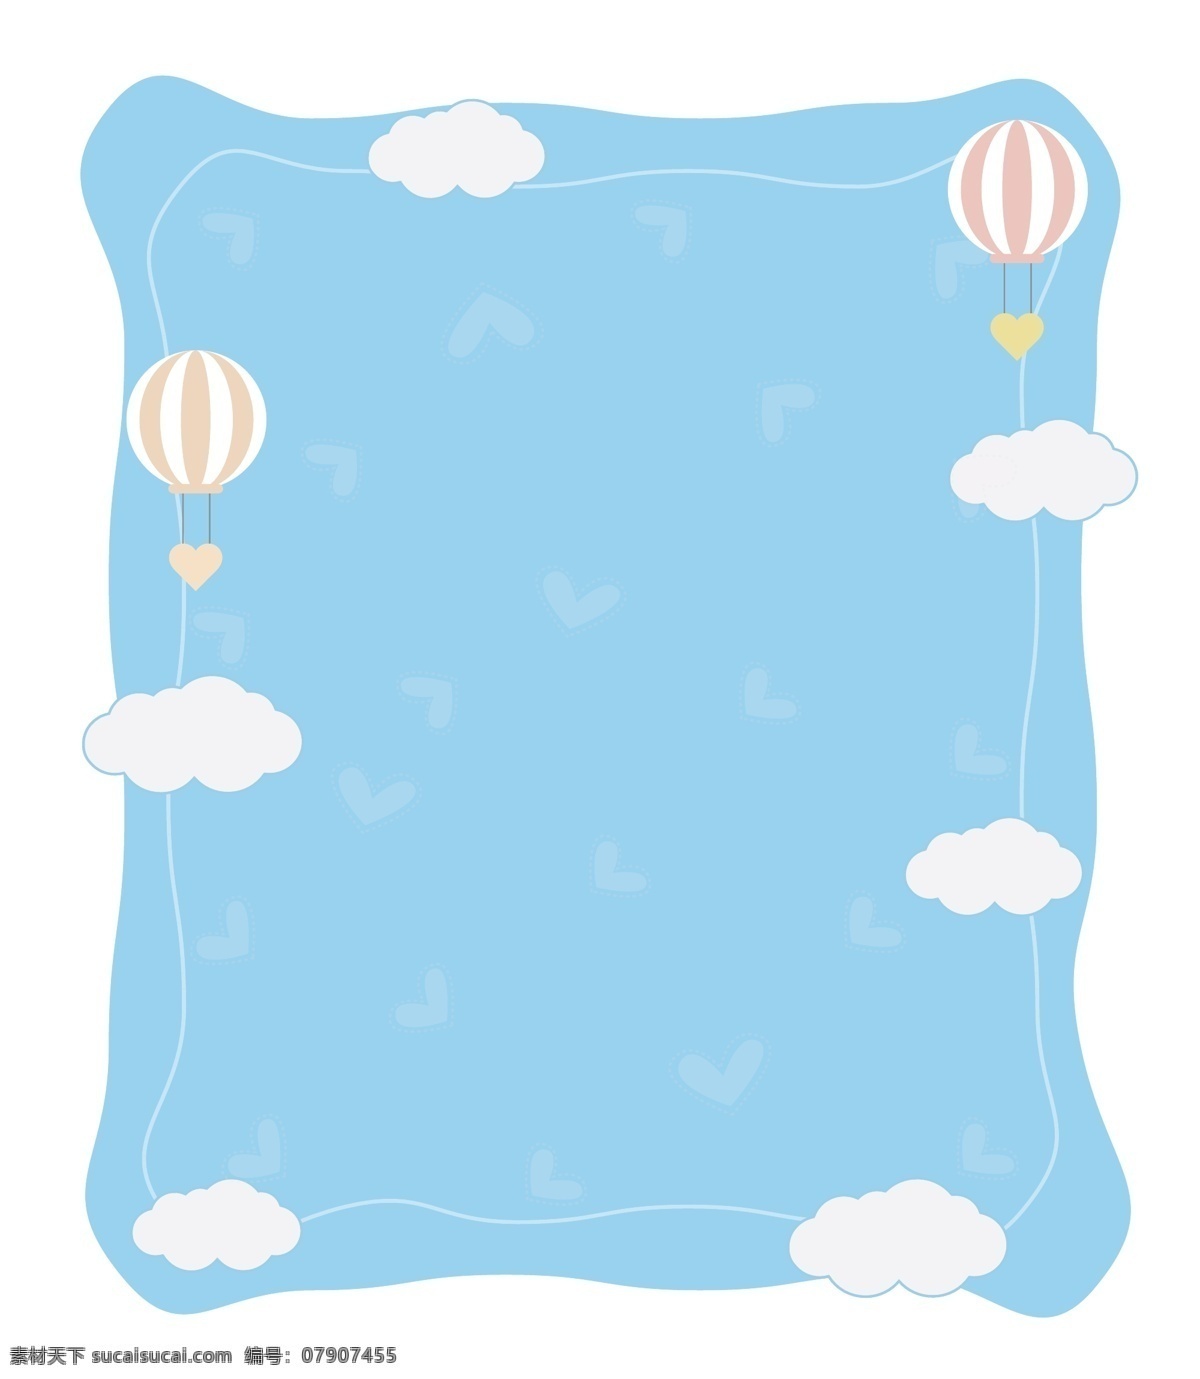 蓝天 白云 可爱 热气球 矢量 免 抠 边框 梦想 飞翔 天空 爱心 细线 蓝色 糖果色 马卡龙色 彩色 柔和 柔色 卡通 儿童 萌